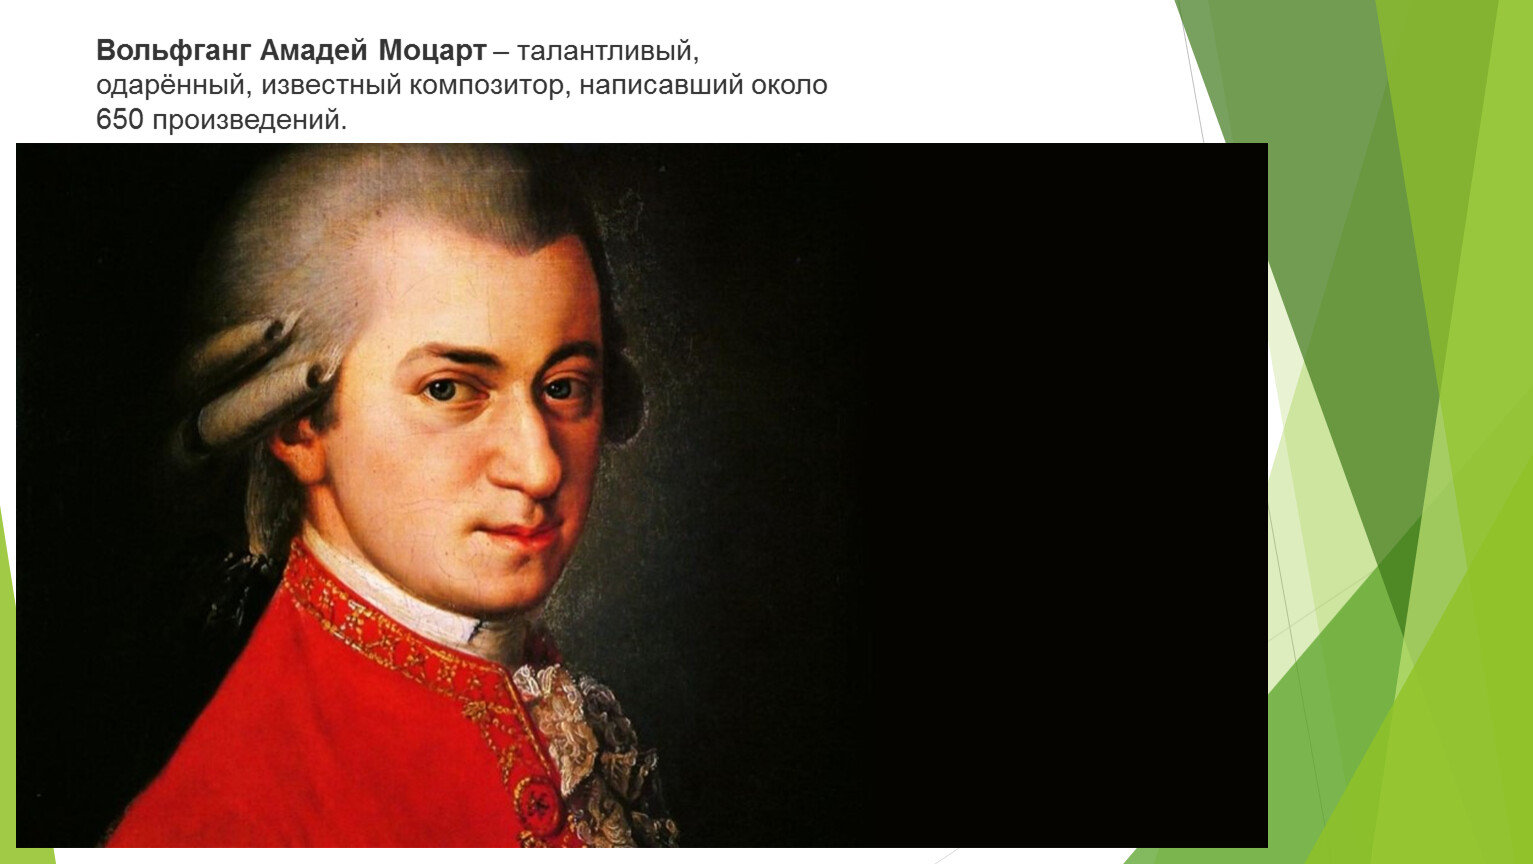 Констанца Моцарт